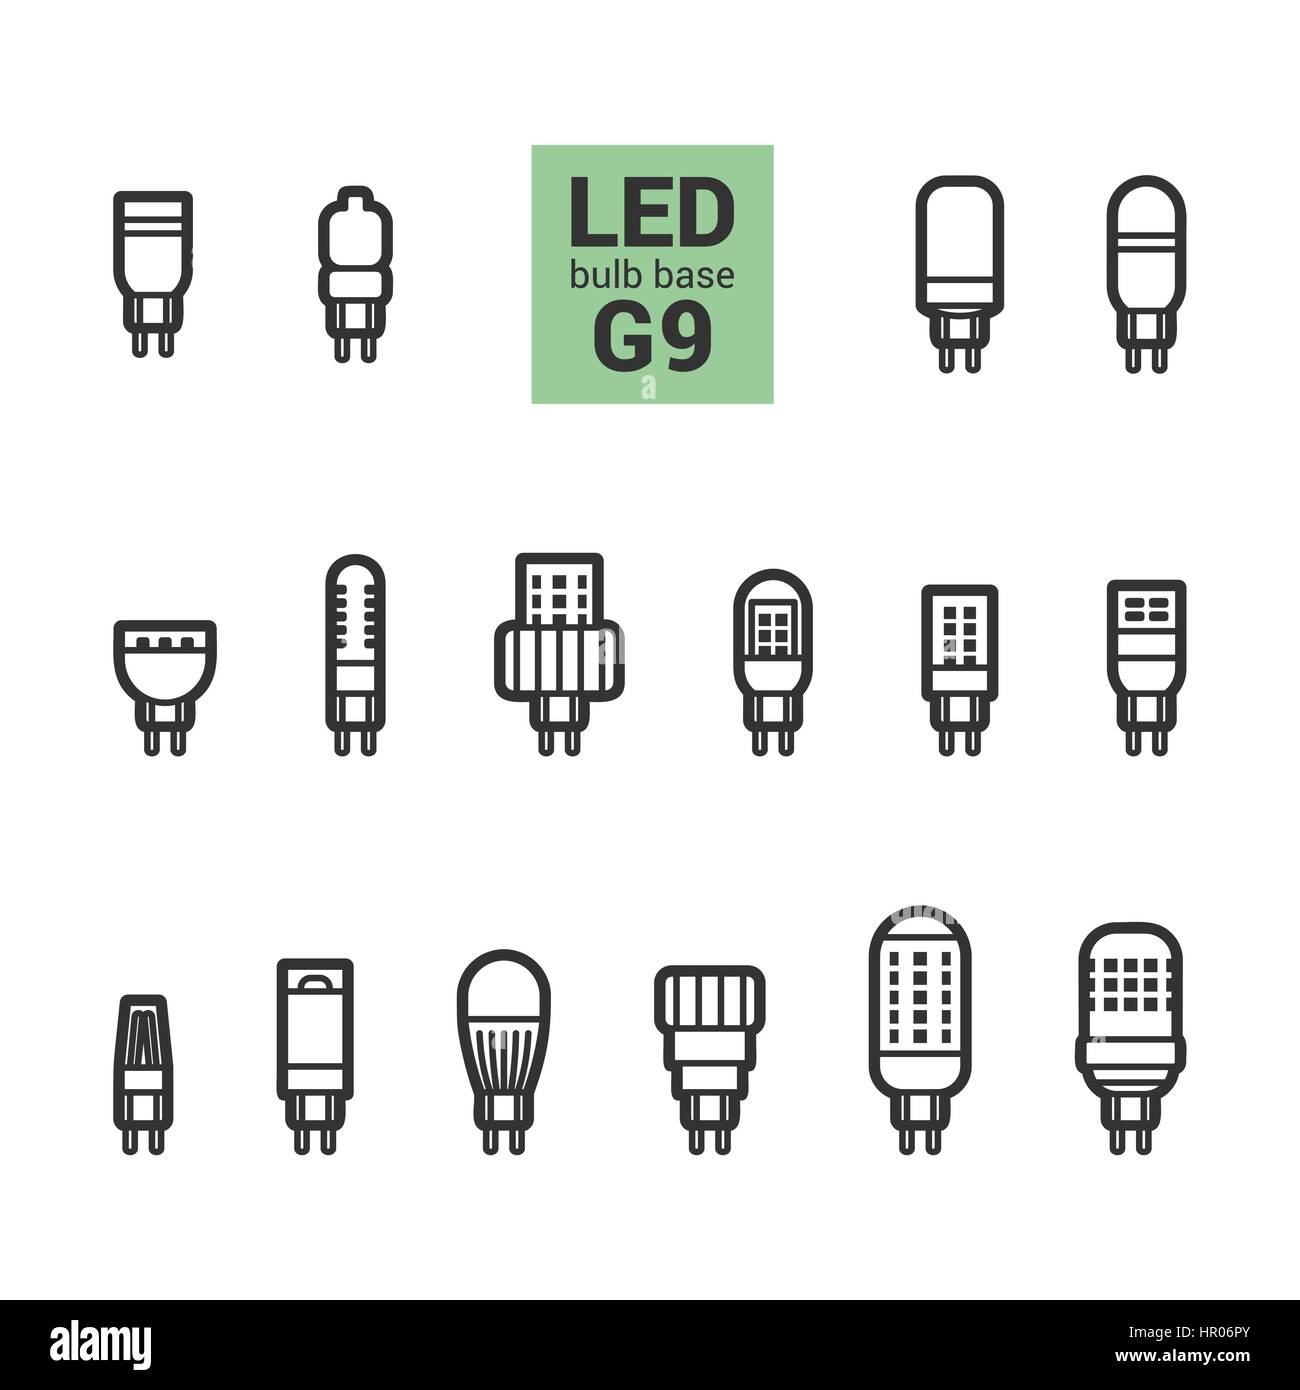 LED-Lampen mit G9 Sockel, Vektor-Übersicht-Symbol auf weißem Hintergrund  festlegen Stock-Vektorgrafik - Alamy